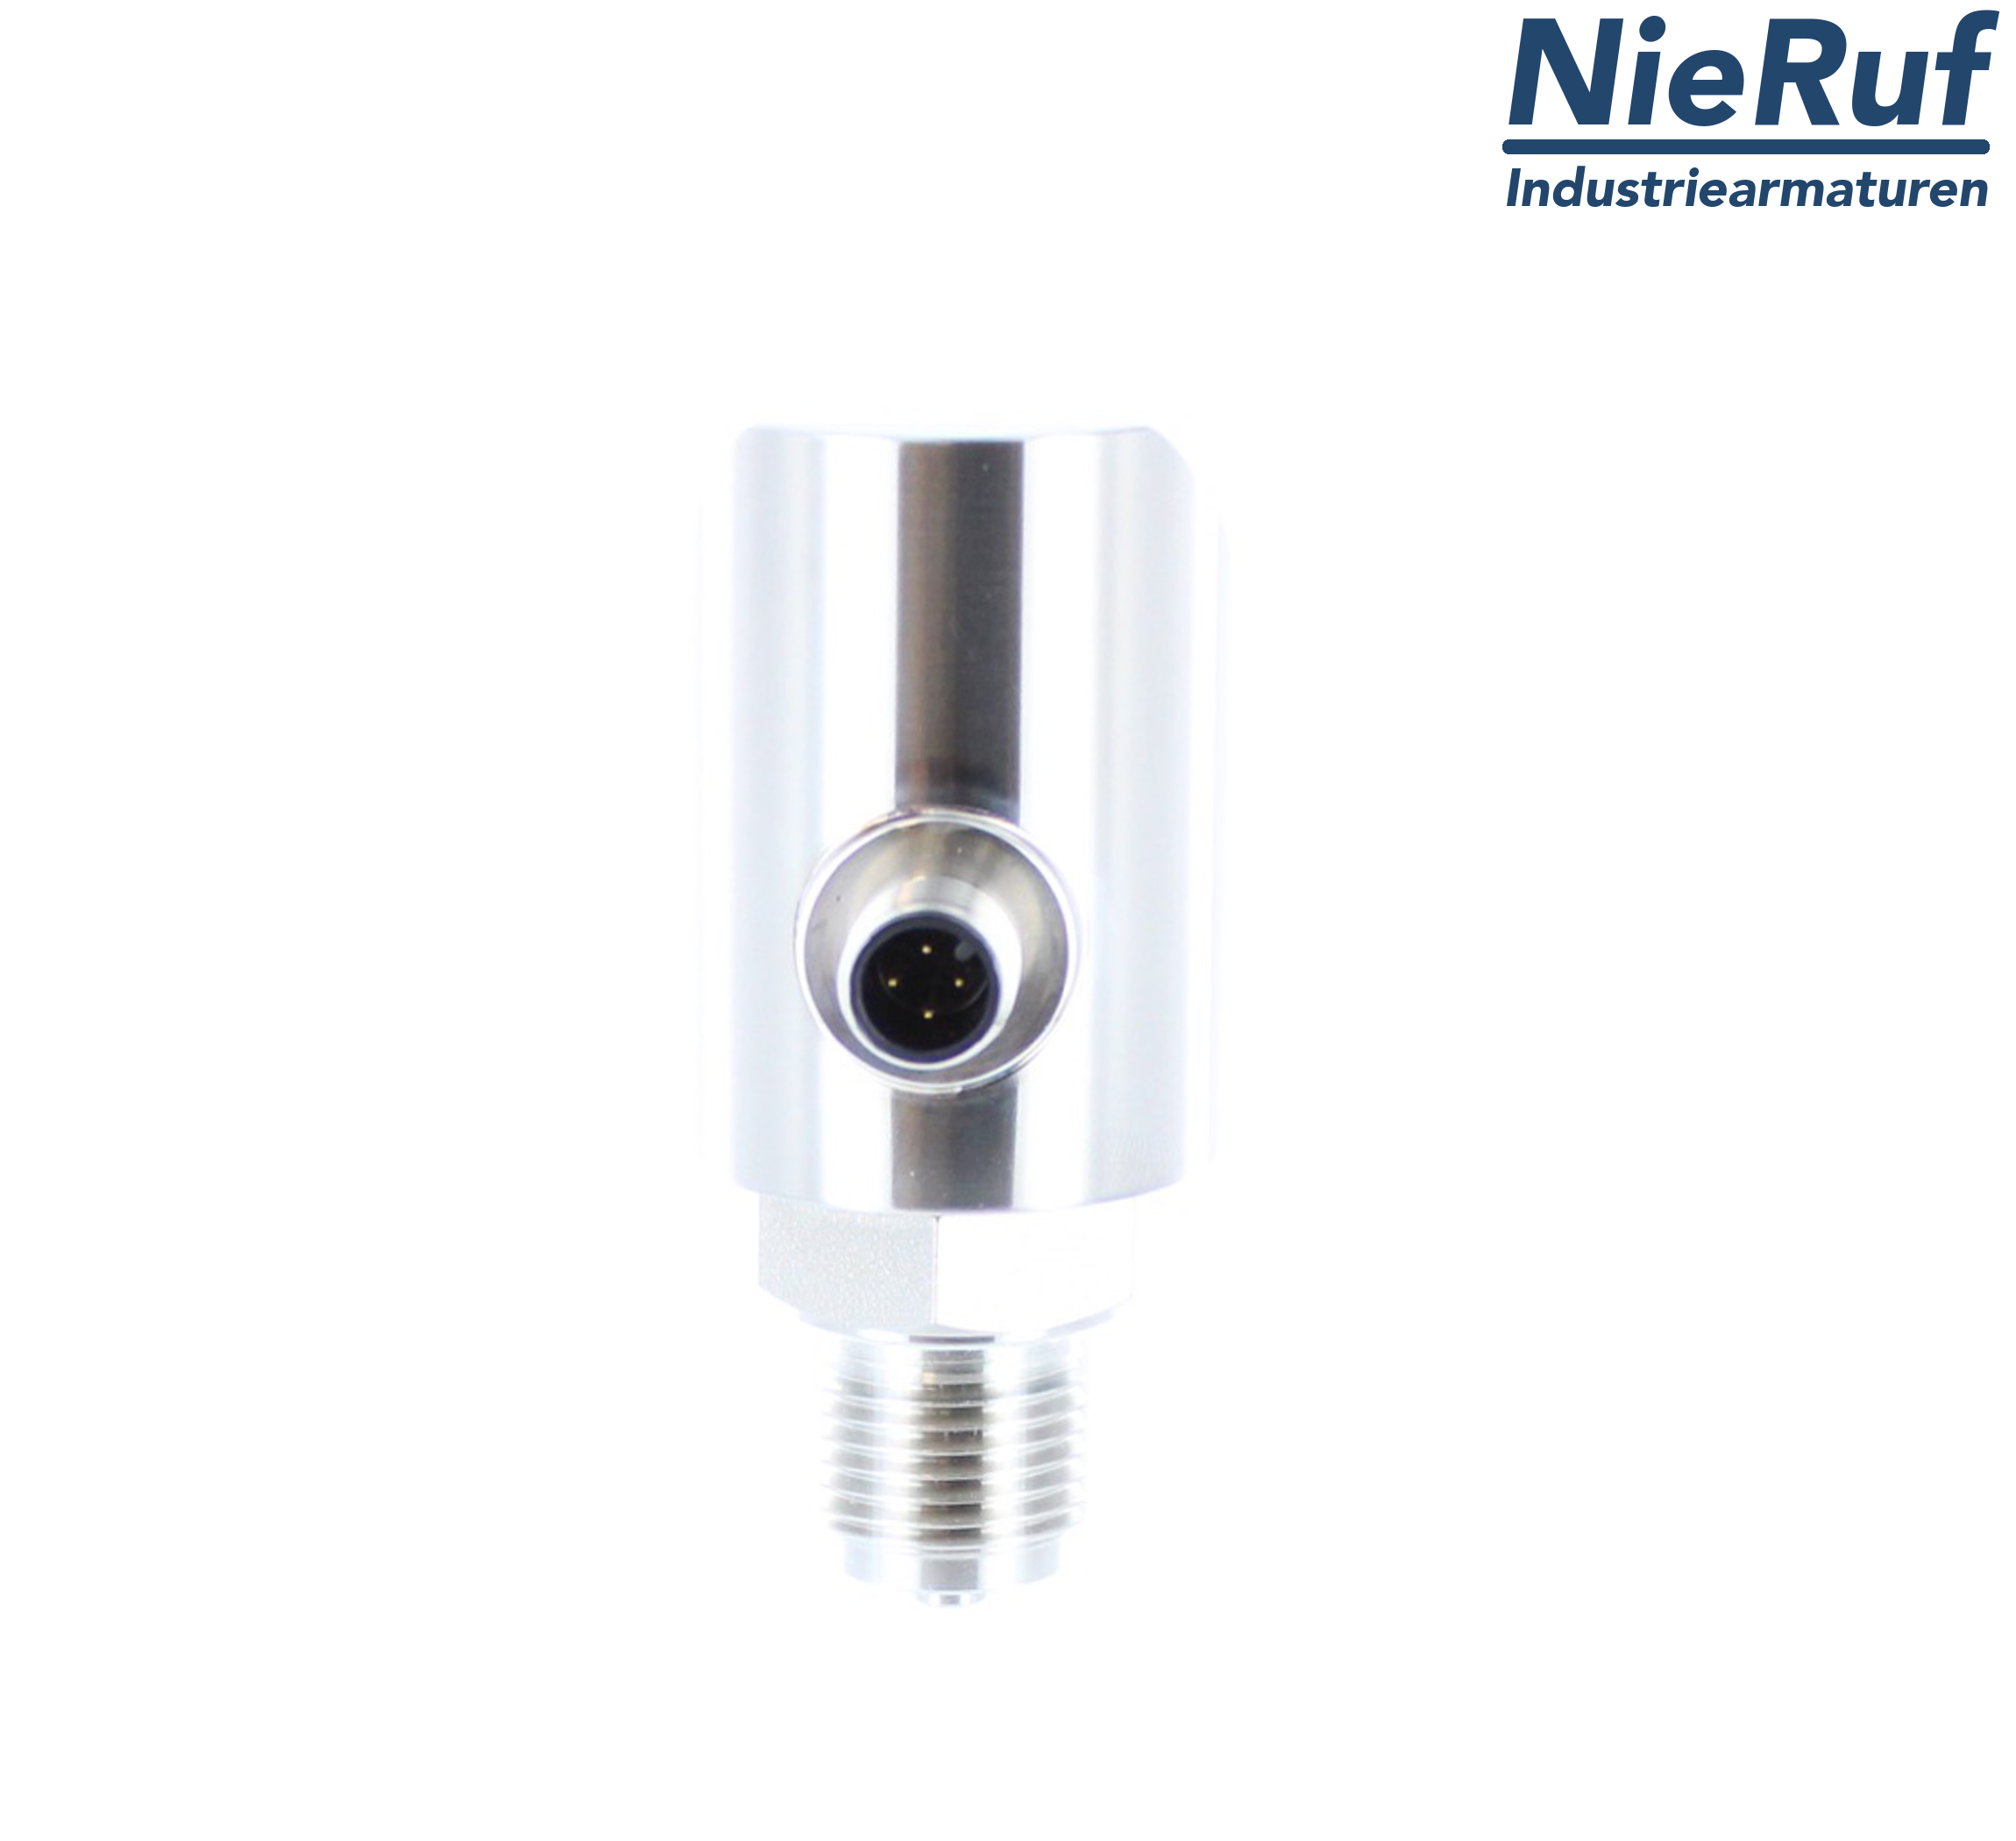 digital pressure sensor G 1/2" B 5-wire: 2xPNP, 1x4 - 20mA FPM 0,0 - 10,0 bar